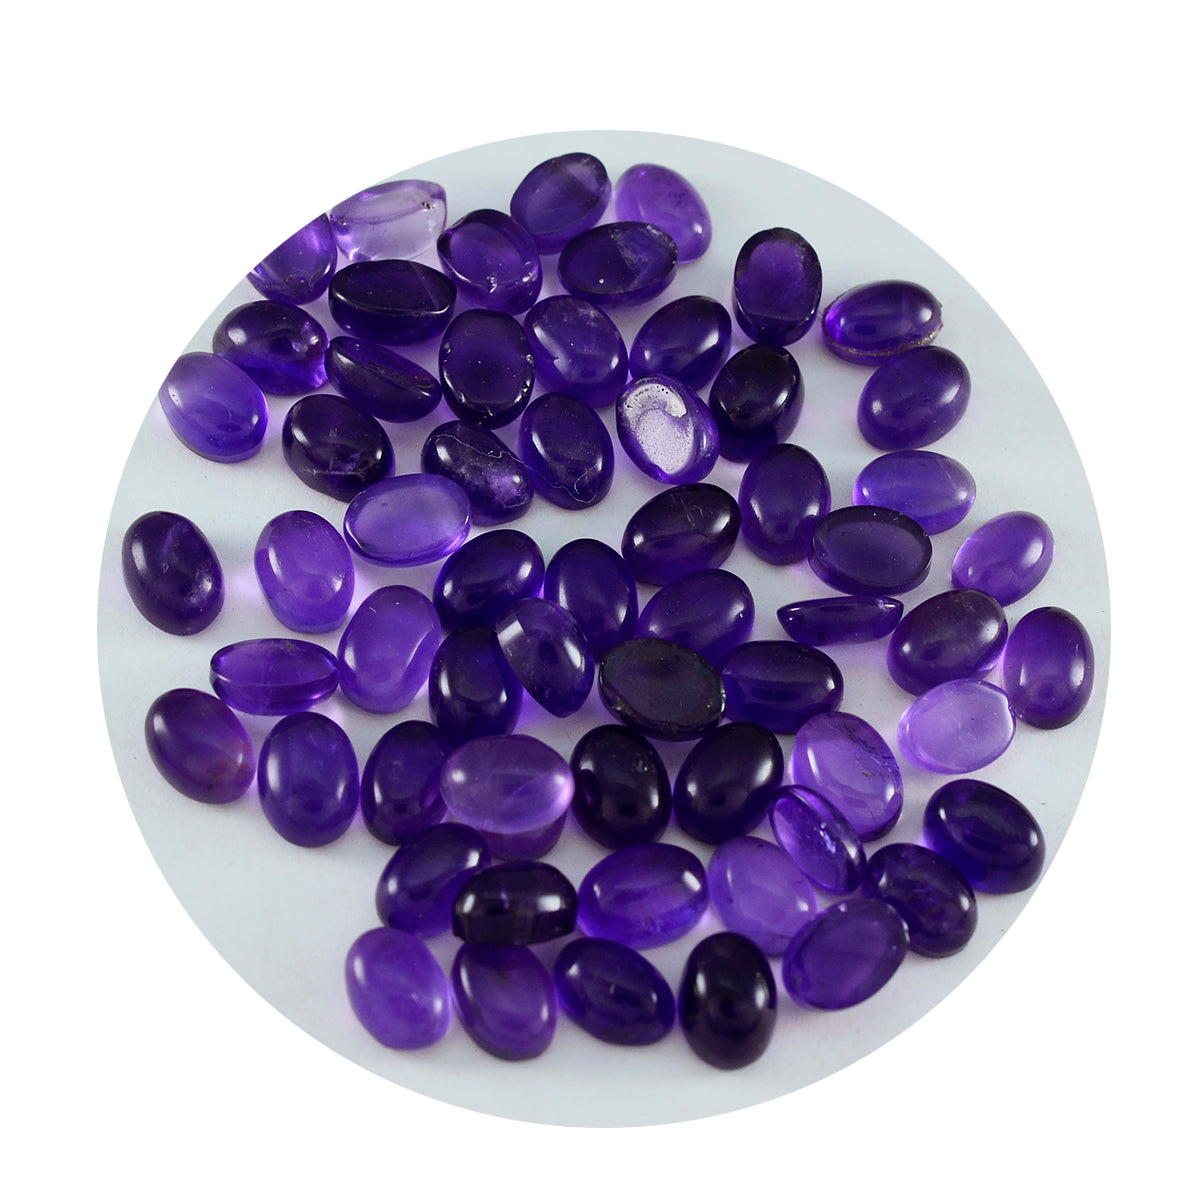 Riyogems 1PC Purple Amethyst Cabochon 3x5 mm Oval Shape A1 Quality Gems